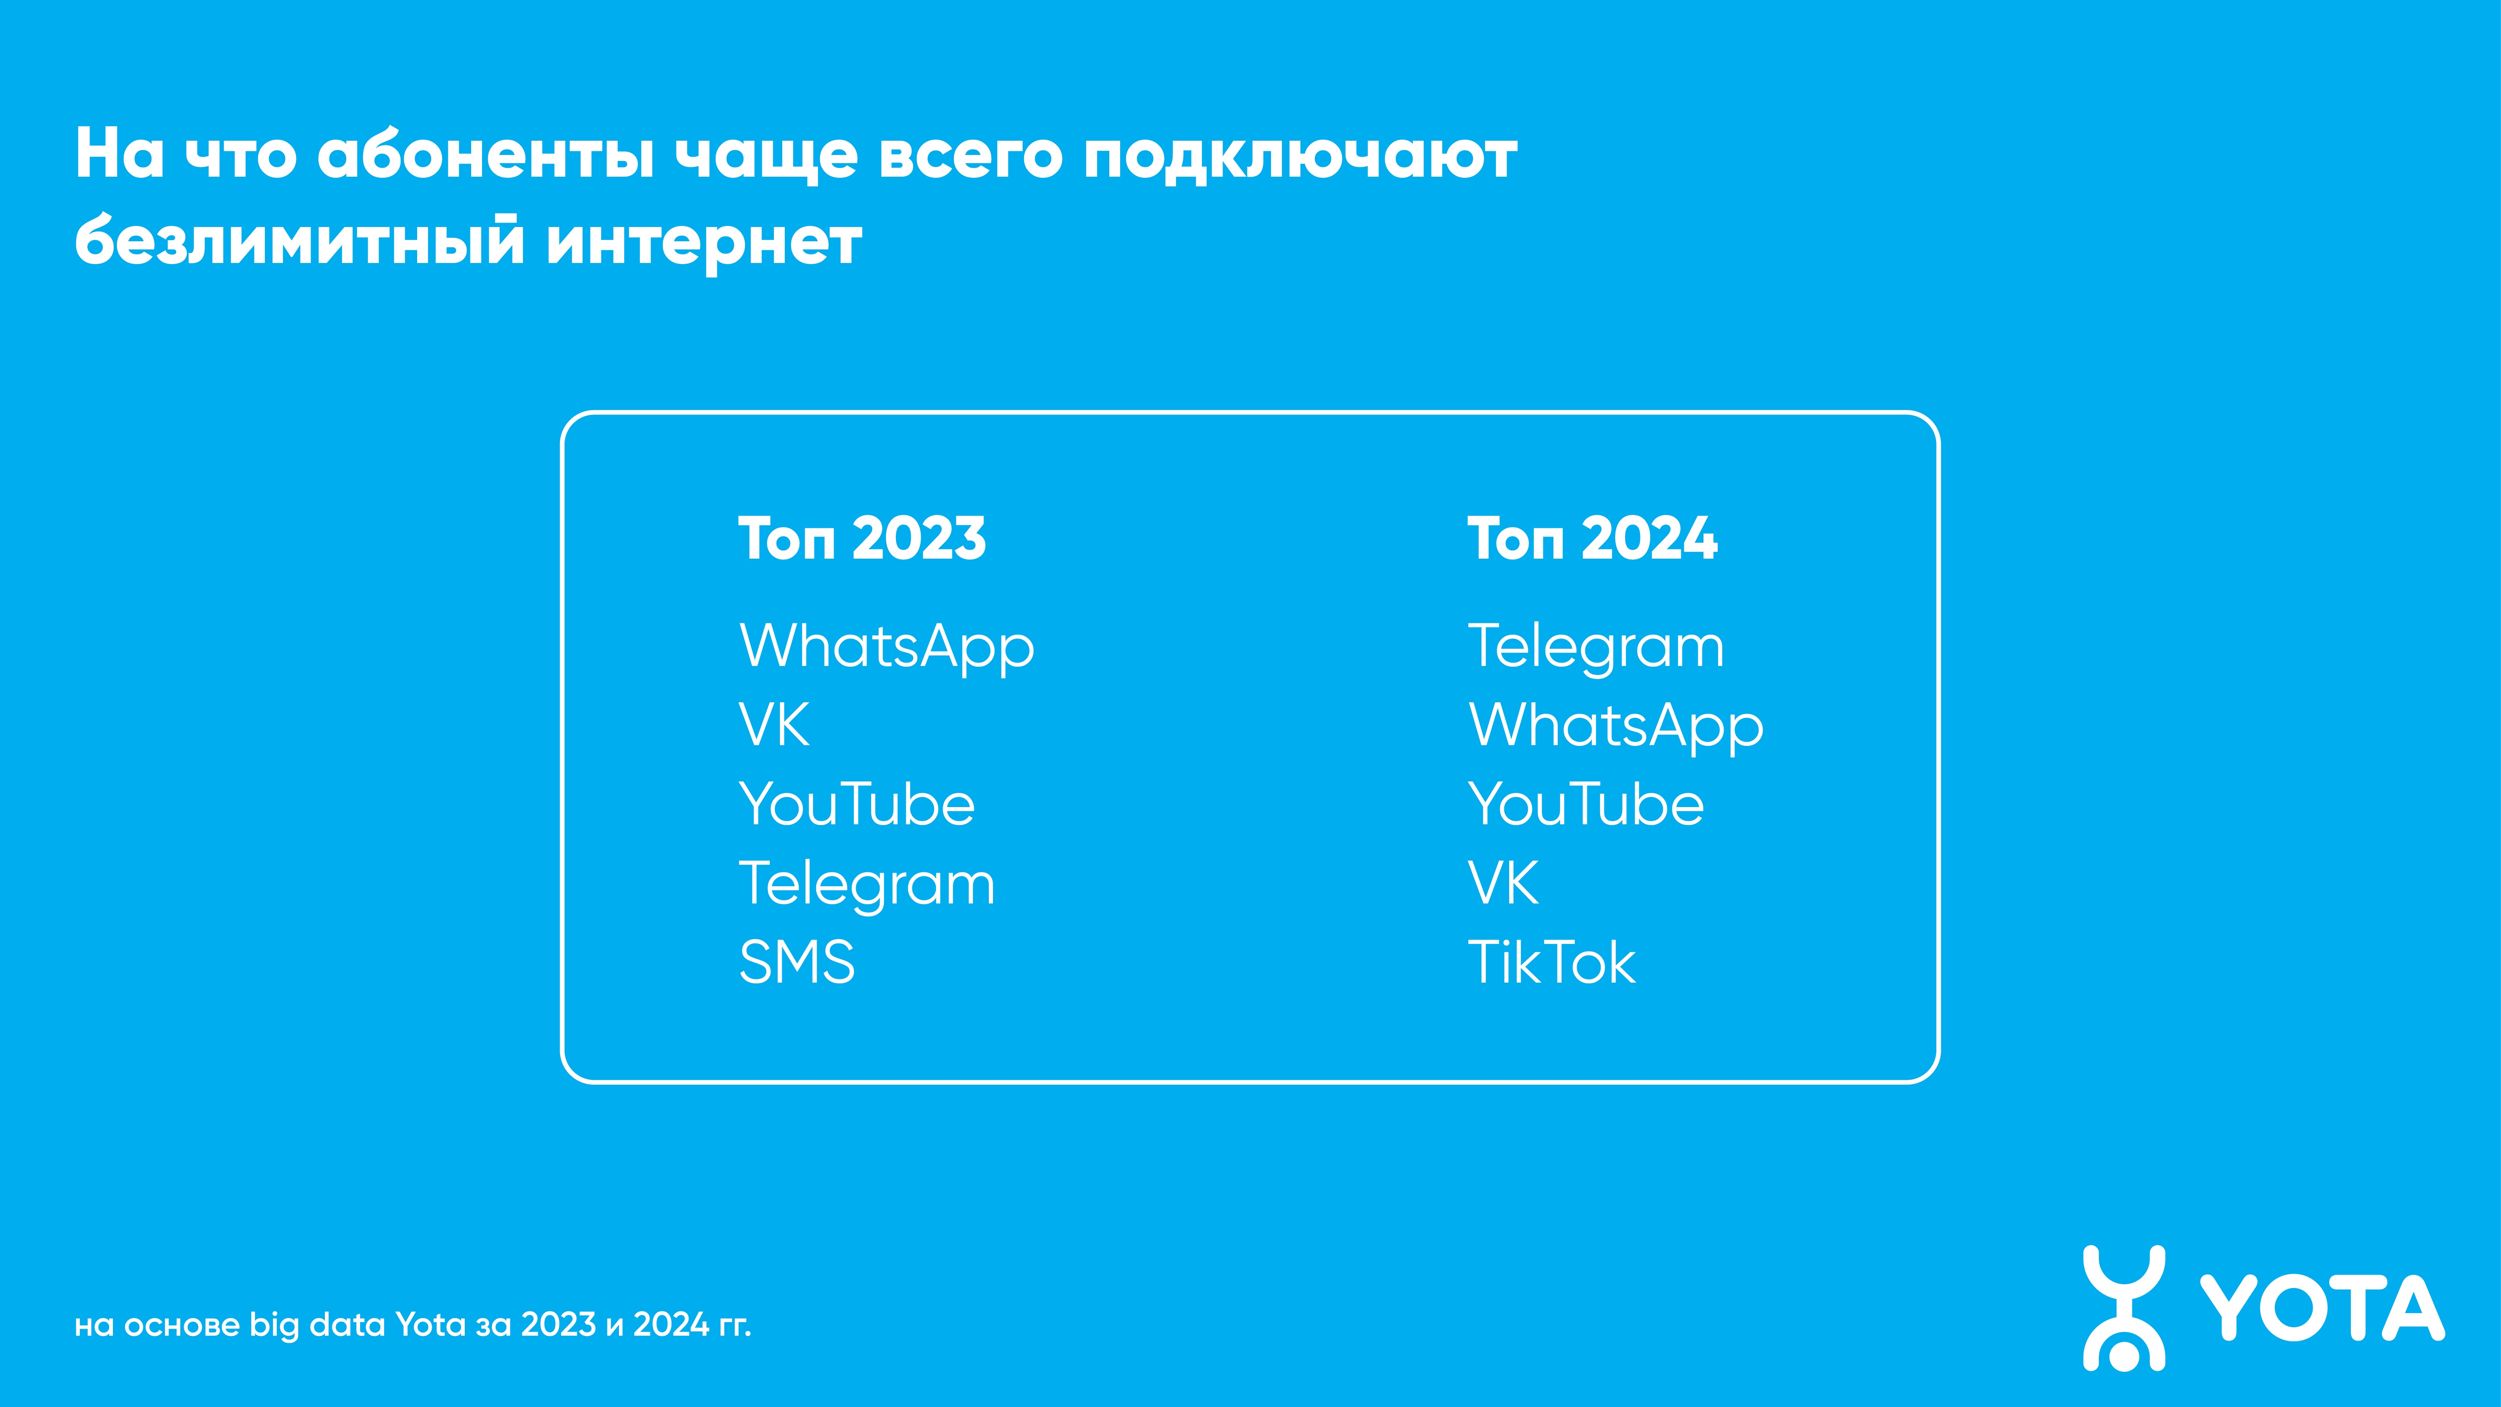 Telegram стал самым востребованным онлайн-приложением